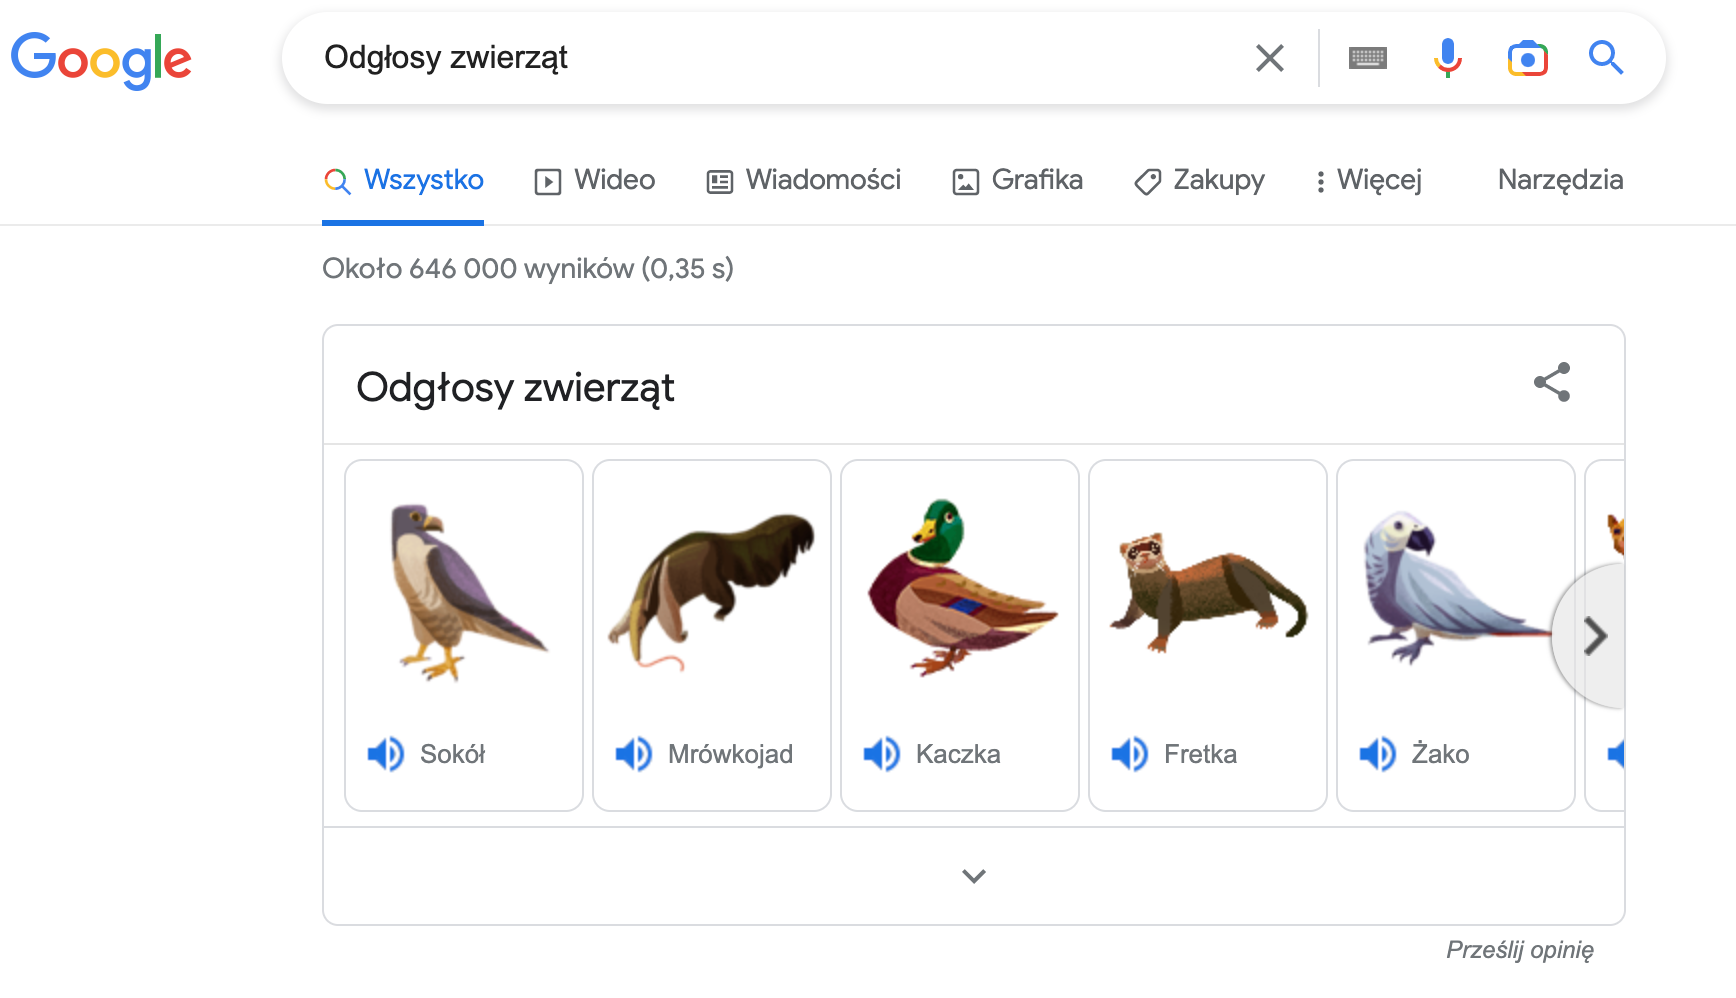 6 Google trick odgłosy zwierząt screen